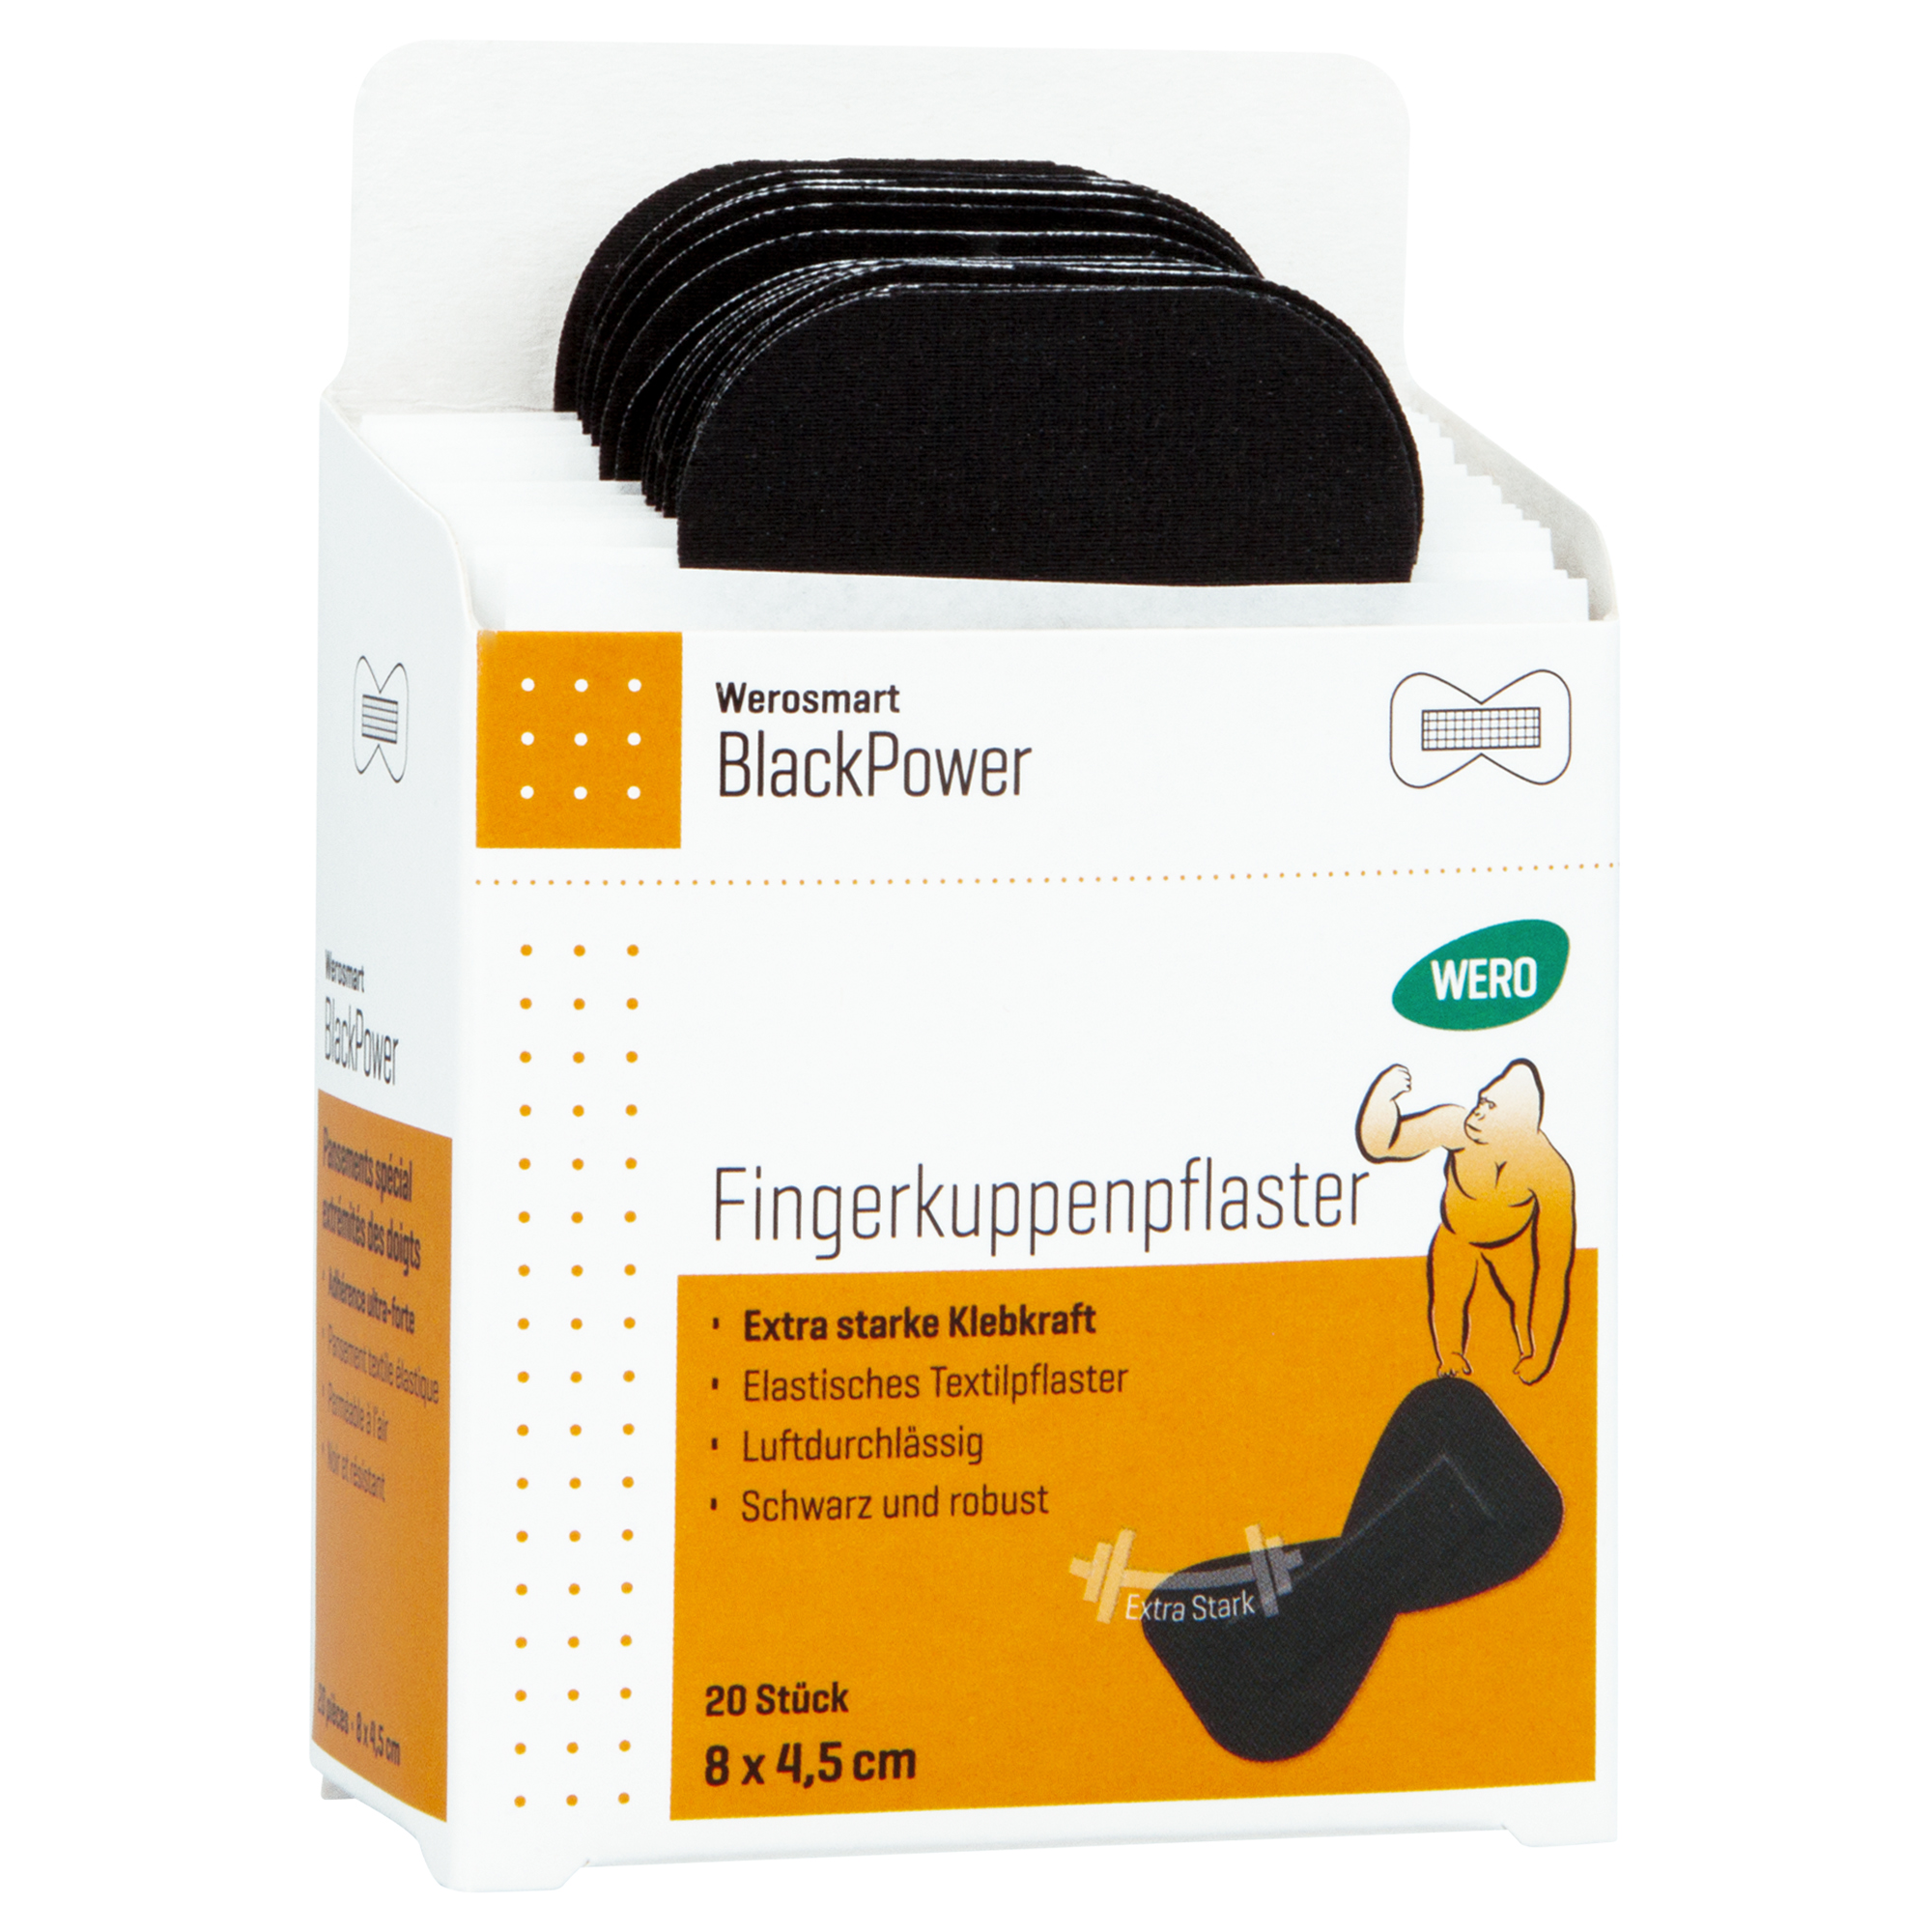 Werosmart BlackPower Fingerkuppenpflaster 8 x 4,5 cm